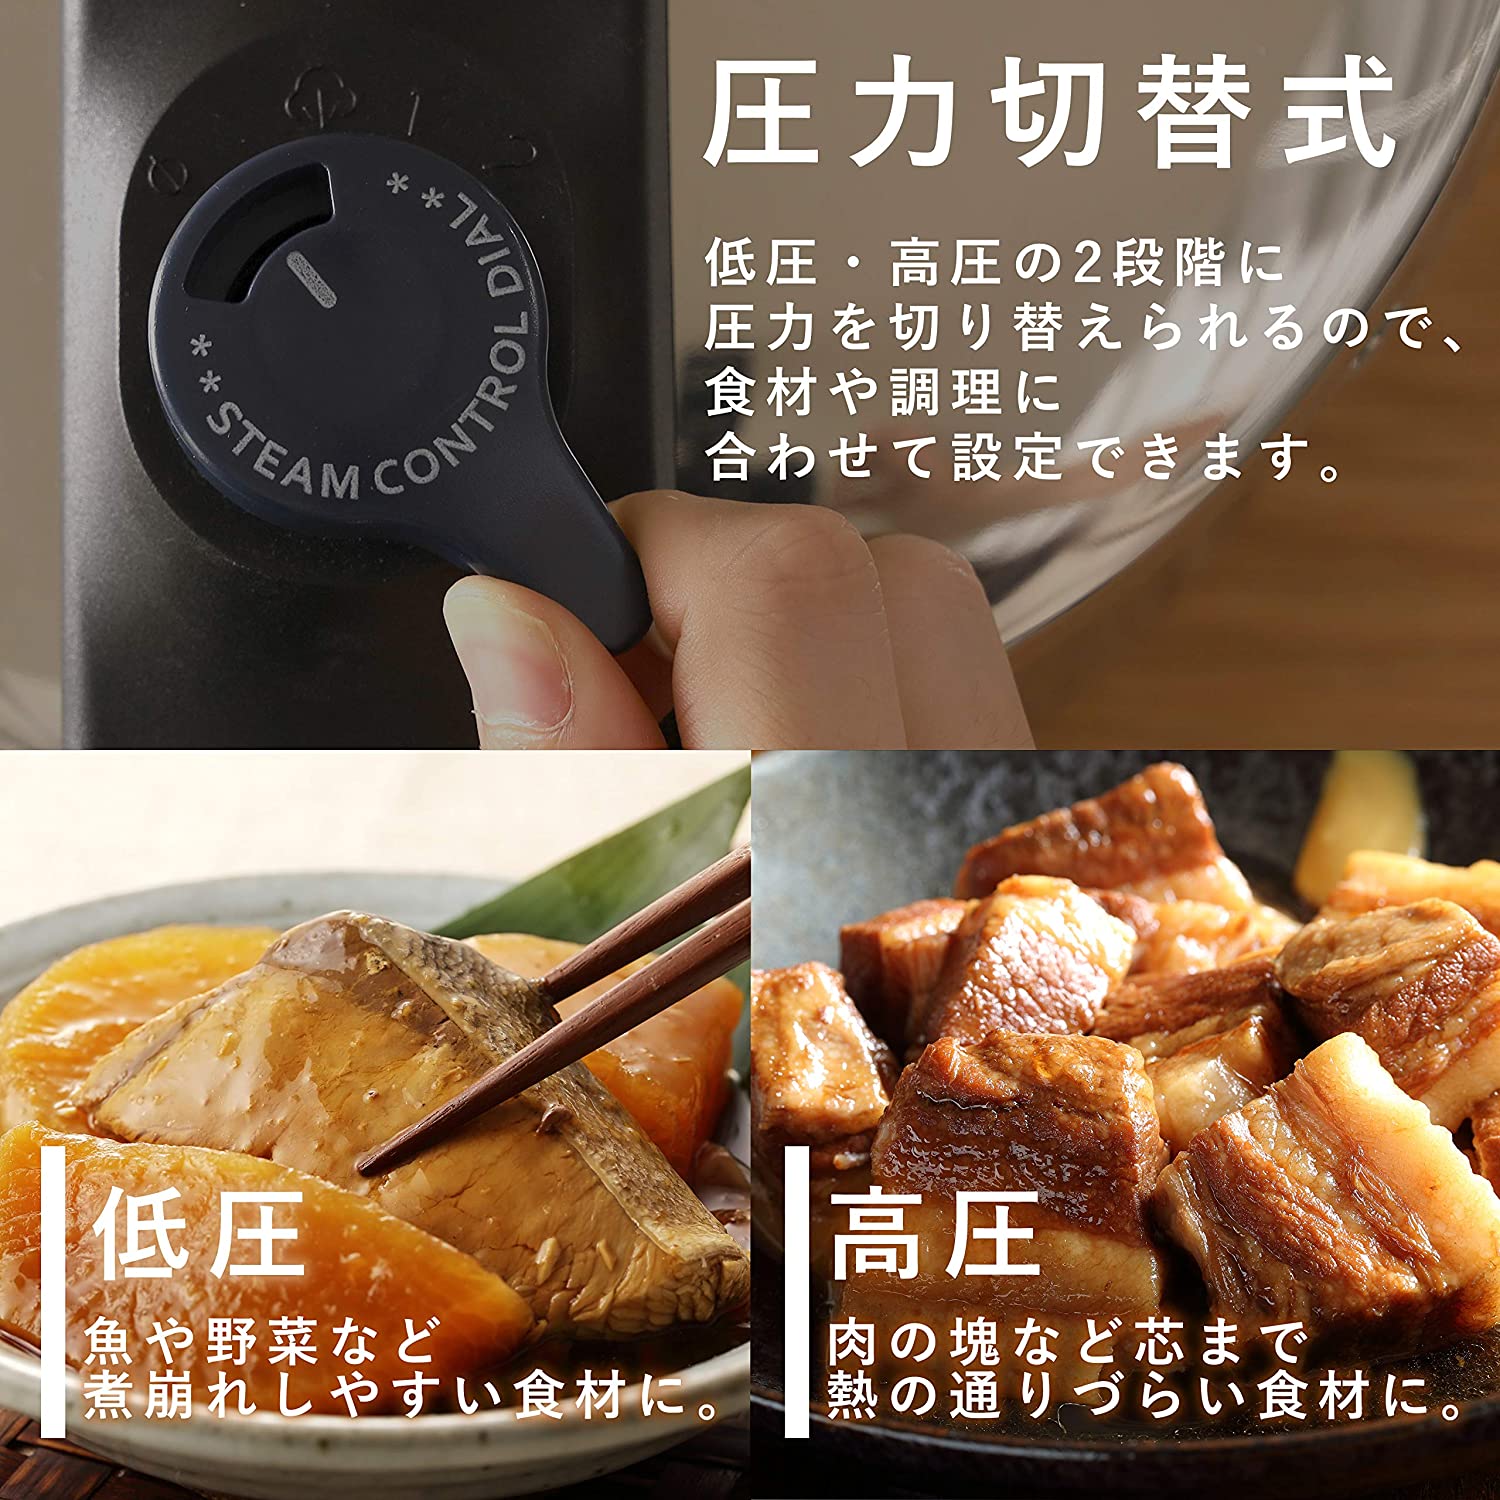 Nồi áp suất bếp từ chính hãng Pearl Metal Quick Eco (4.5L / 5.5L) - Hàng nội địa Nhật Bản #Nhập khẩu chính hãng